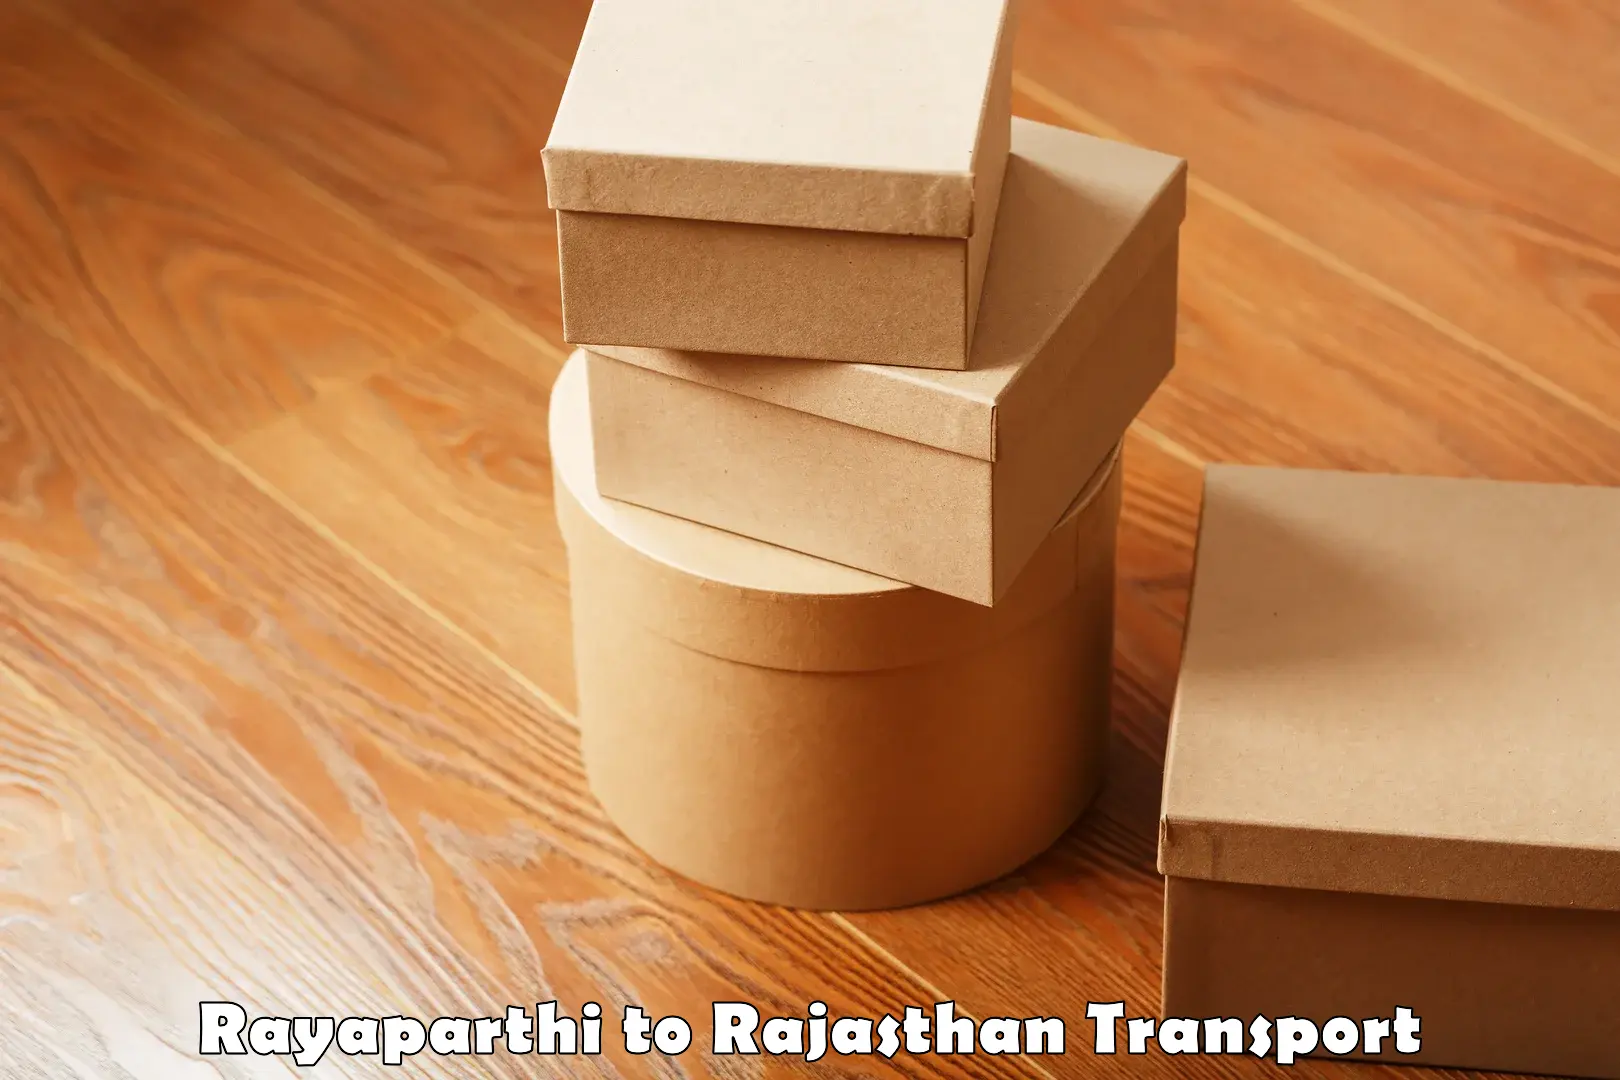 Delivery service Rayaparthi to Makrana